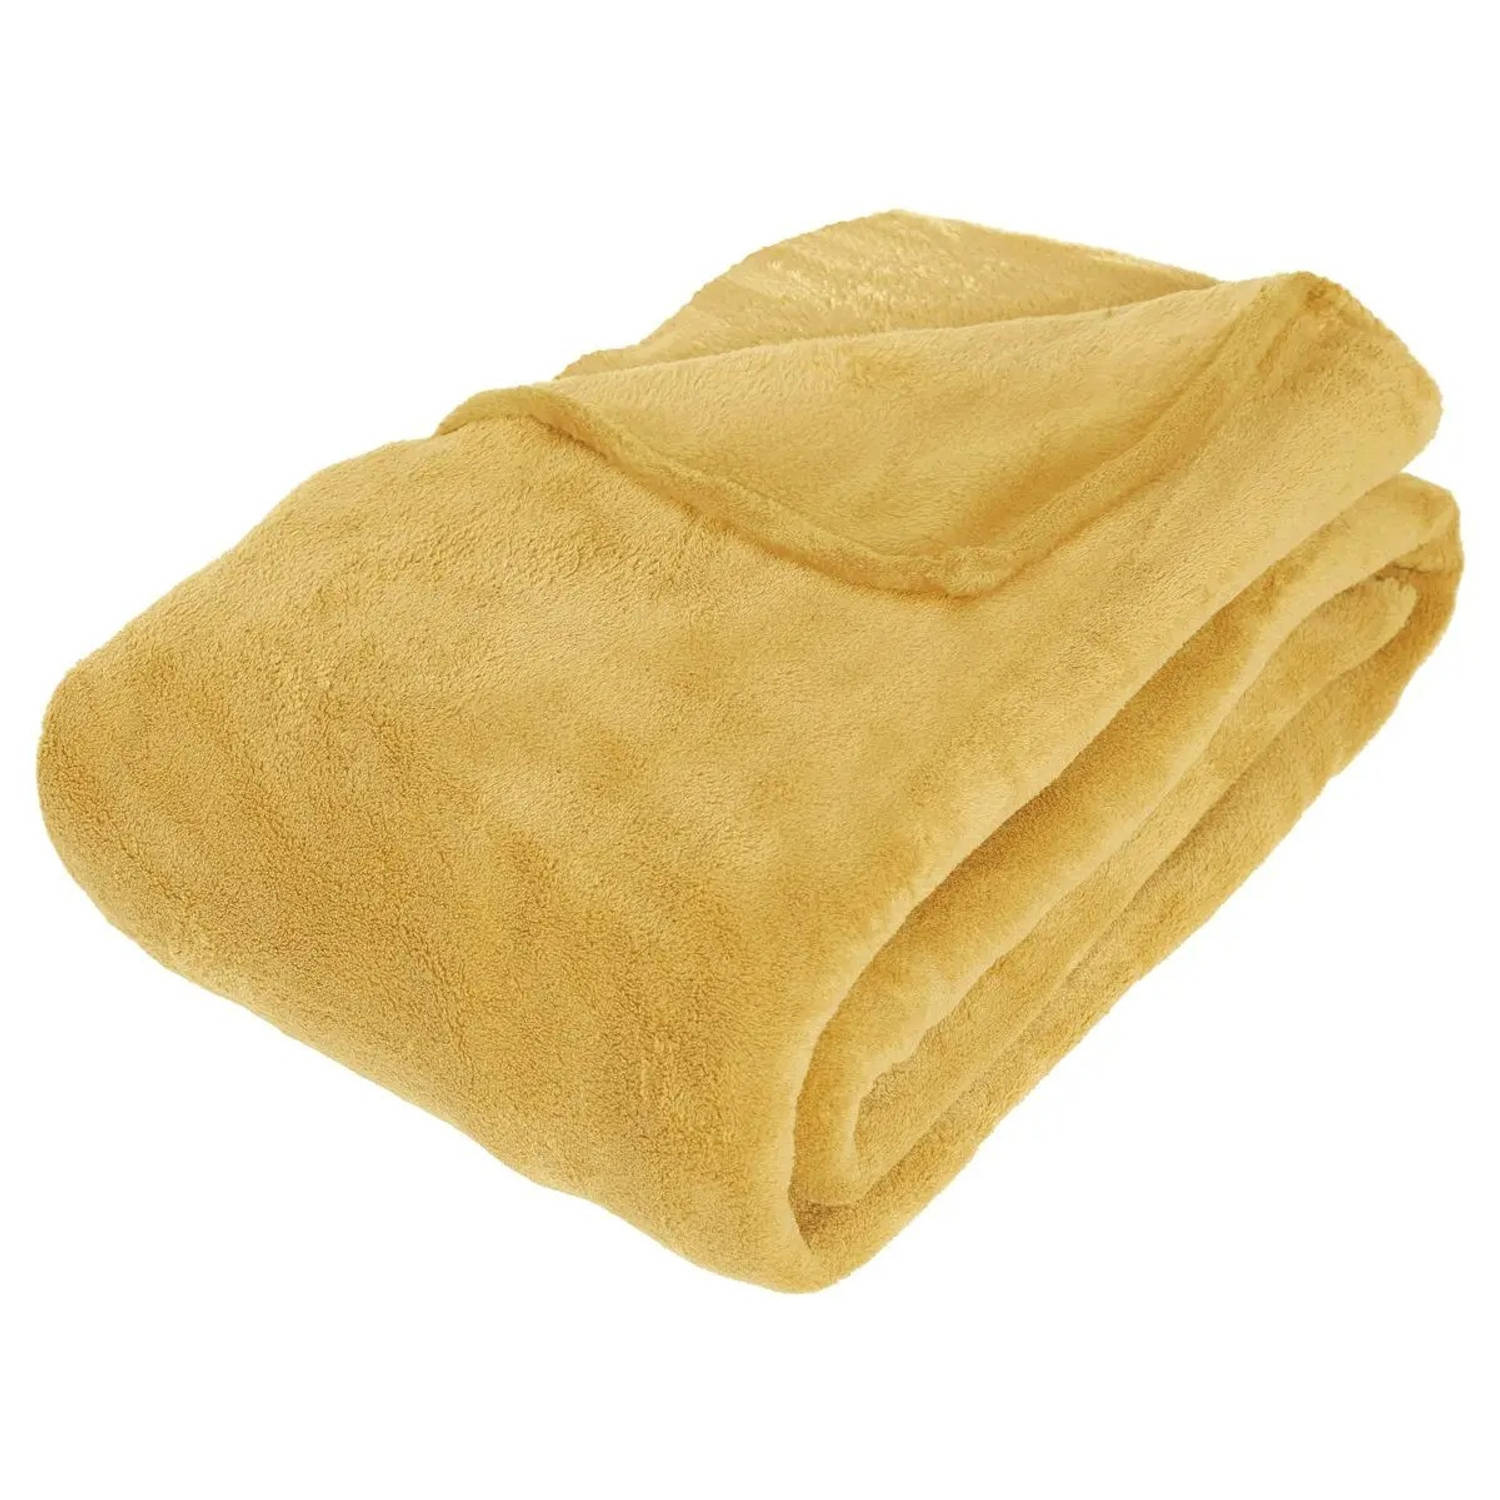 Grote Fleece deken/fleeceplaid oker geel 180 x 230 cm polyester